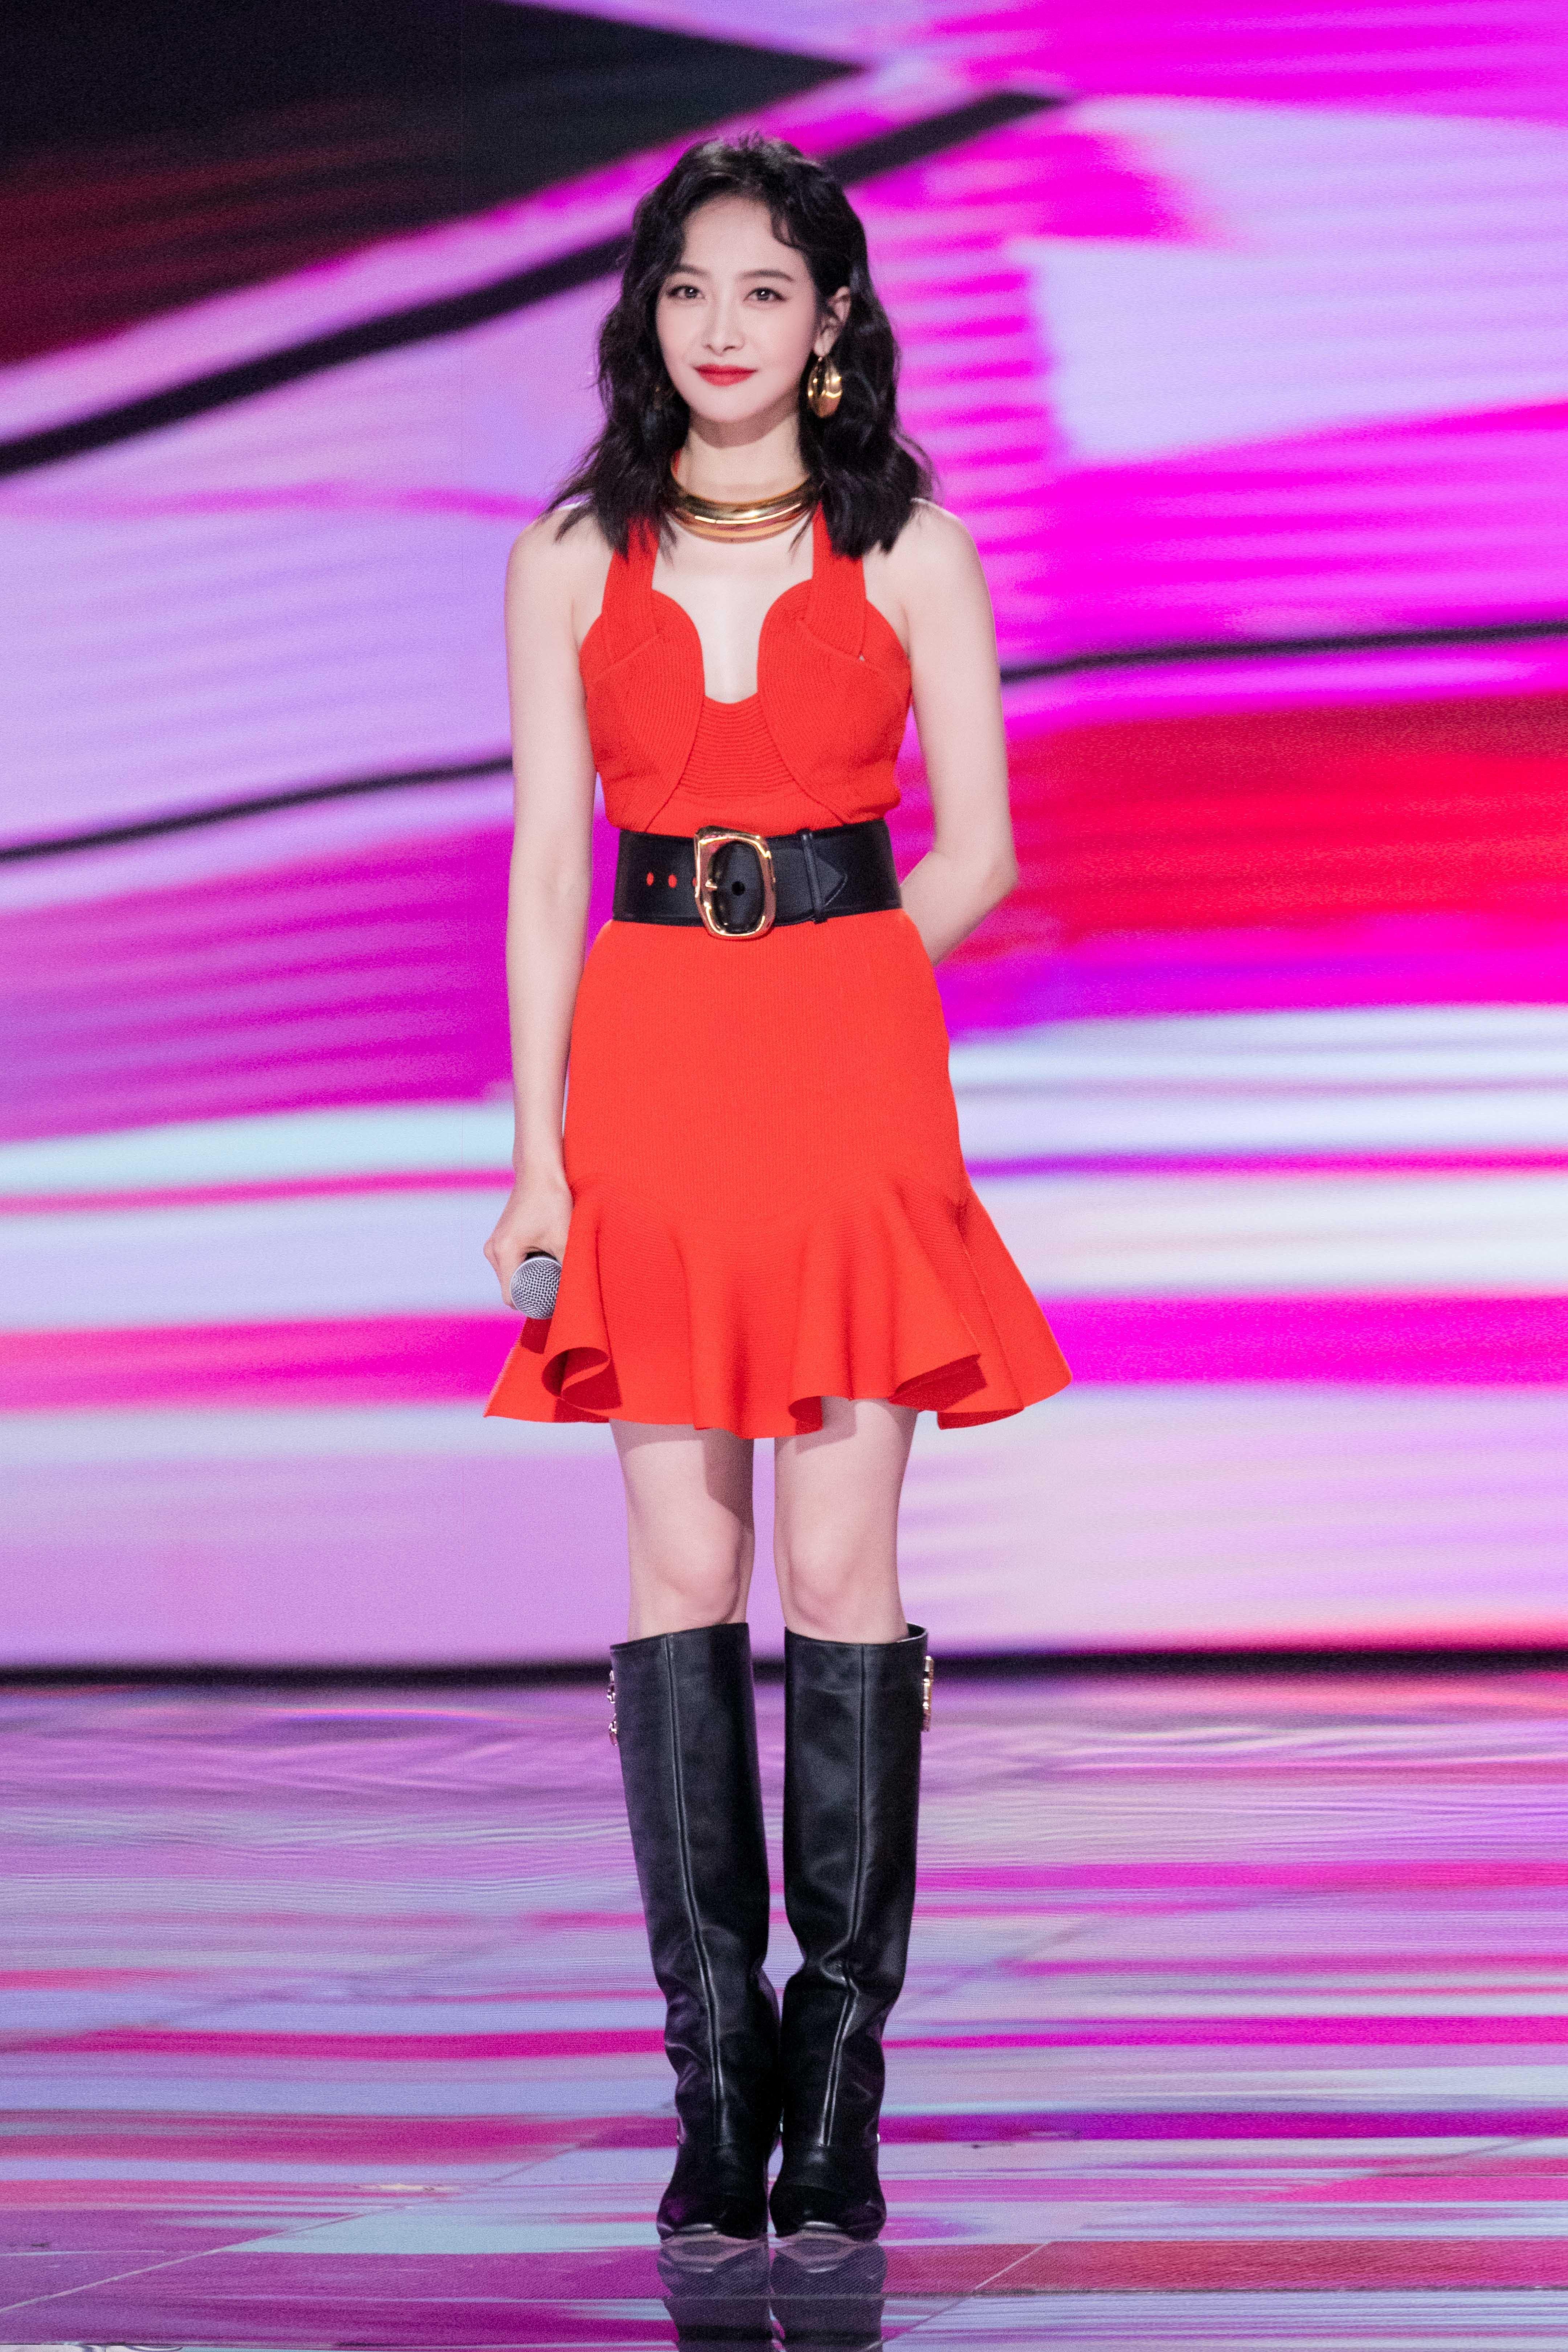 宋茜穿红裙主持《创造营2020》总决赛 纤腰美腿抢镜风情万种,